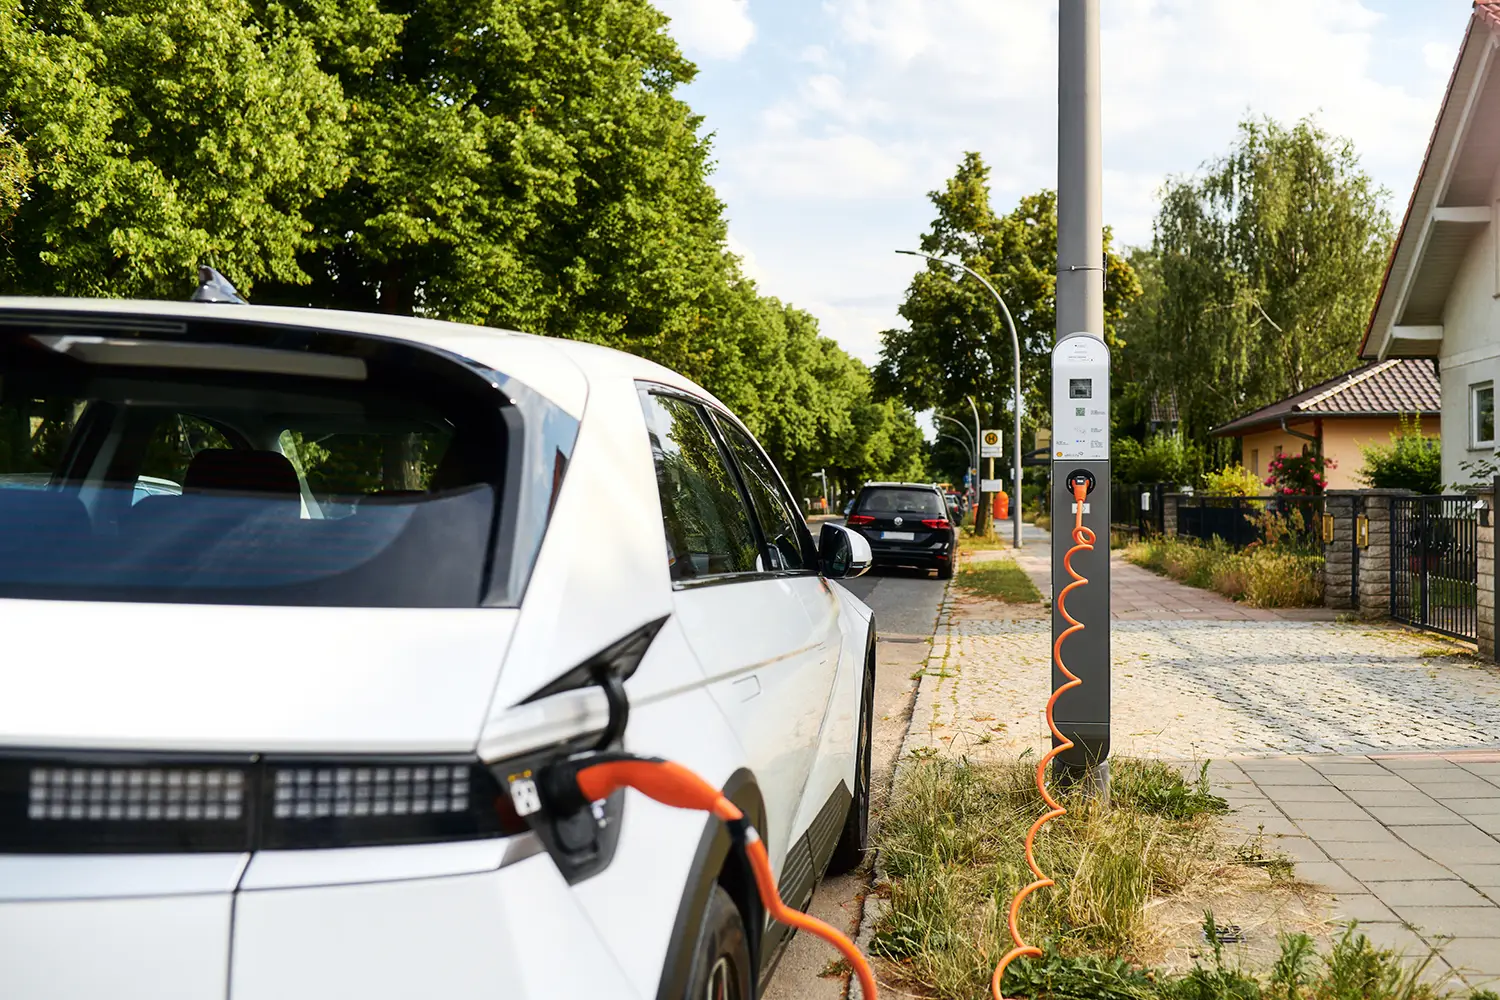 Aufladen eines E-Autos an einer öffentlichen ubitricity AC-Laternenladestation, in einem Wohngebiet in Berlin, Deutschland